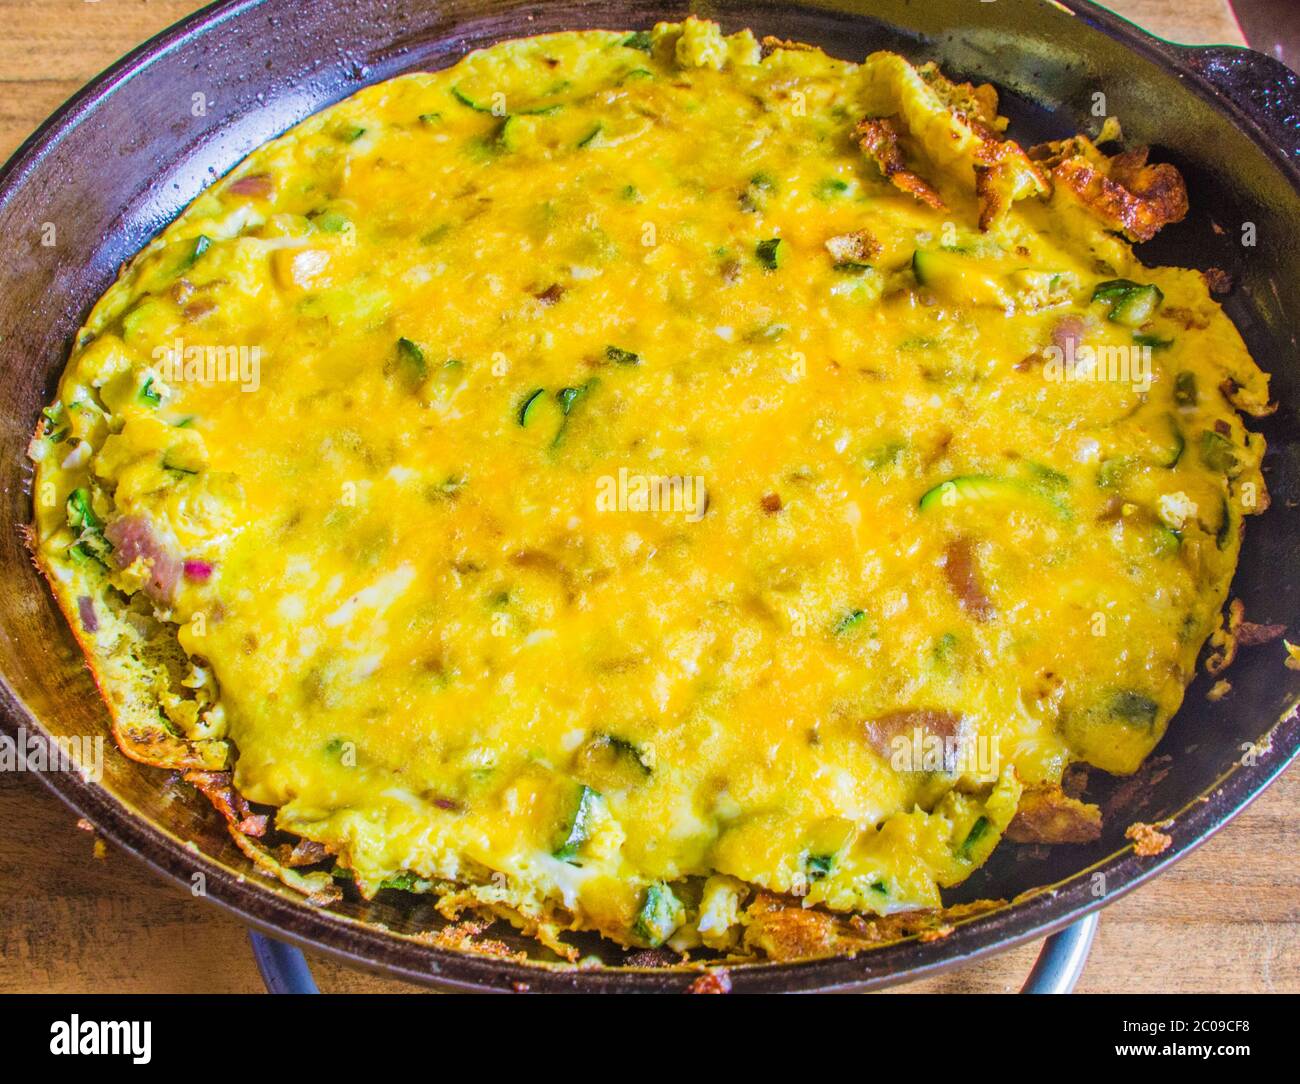 Padella con frittata a base di uova, zucchine, formaggio, olio, sale, pepe ed erbe aromatiche Foto Stock